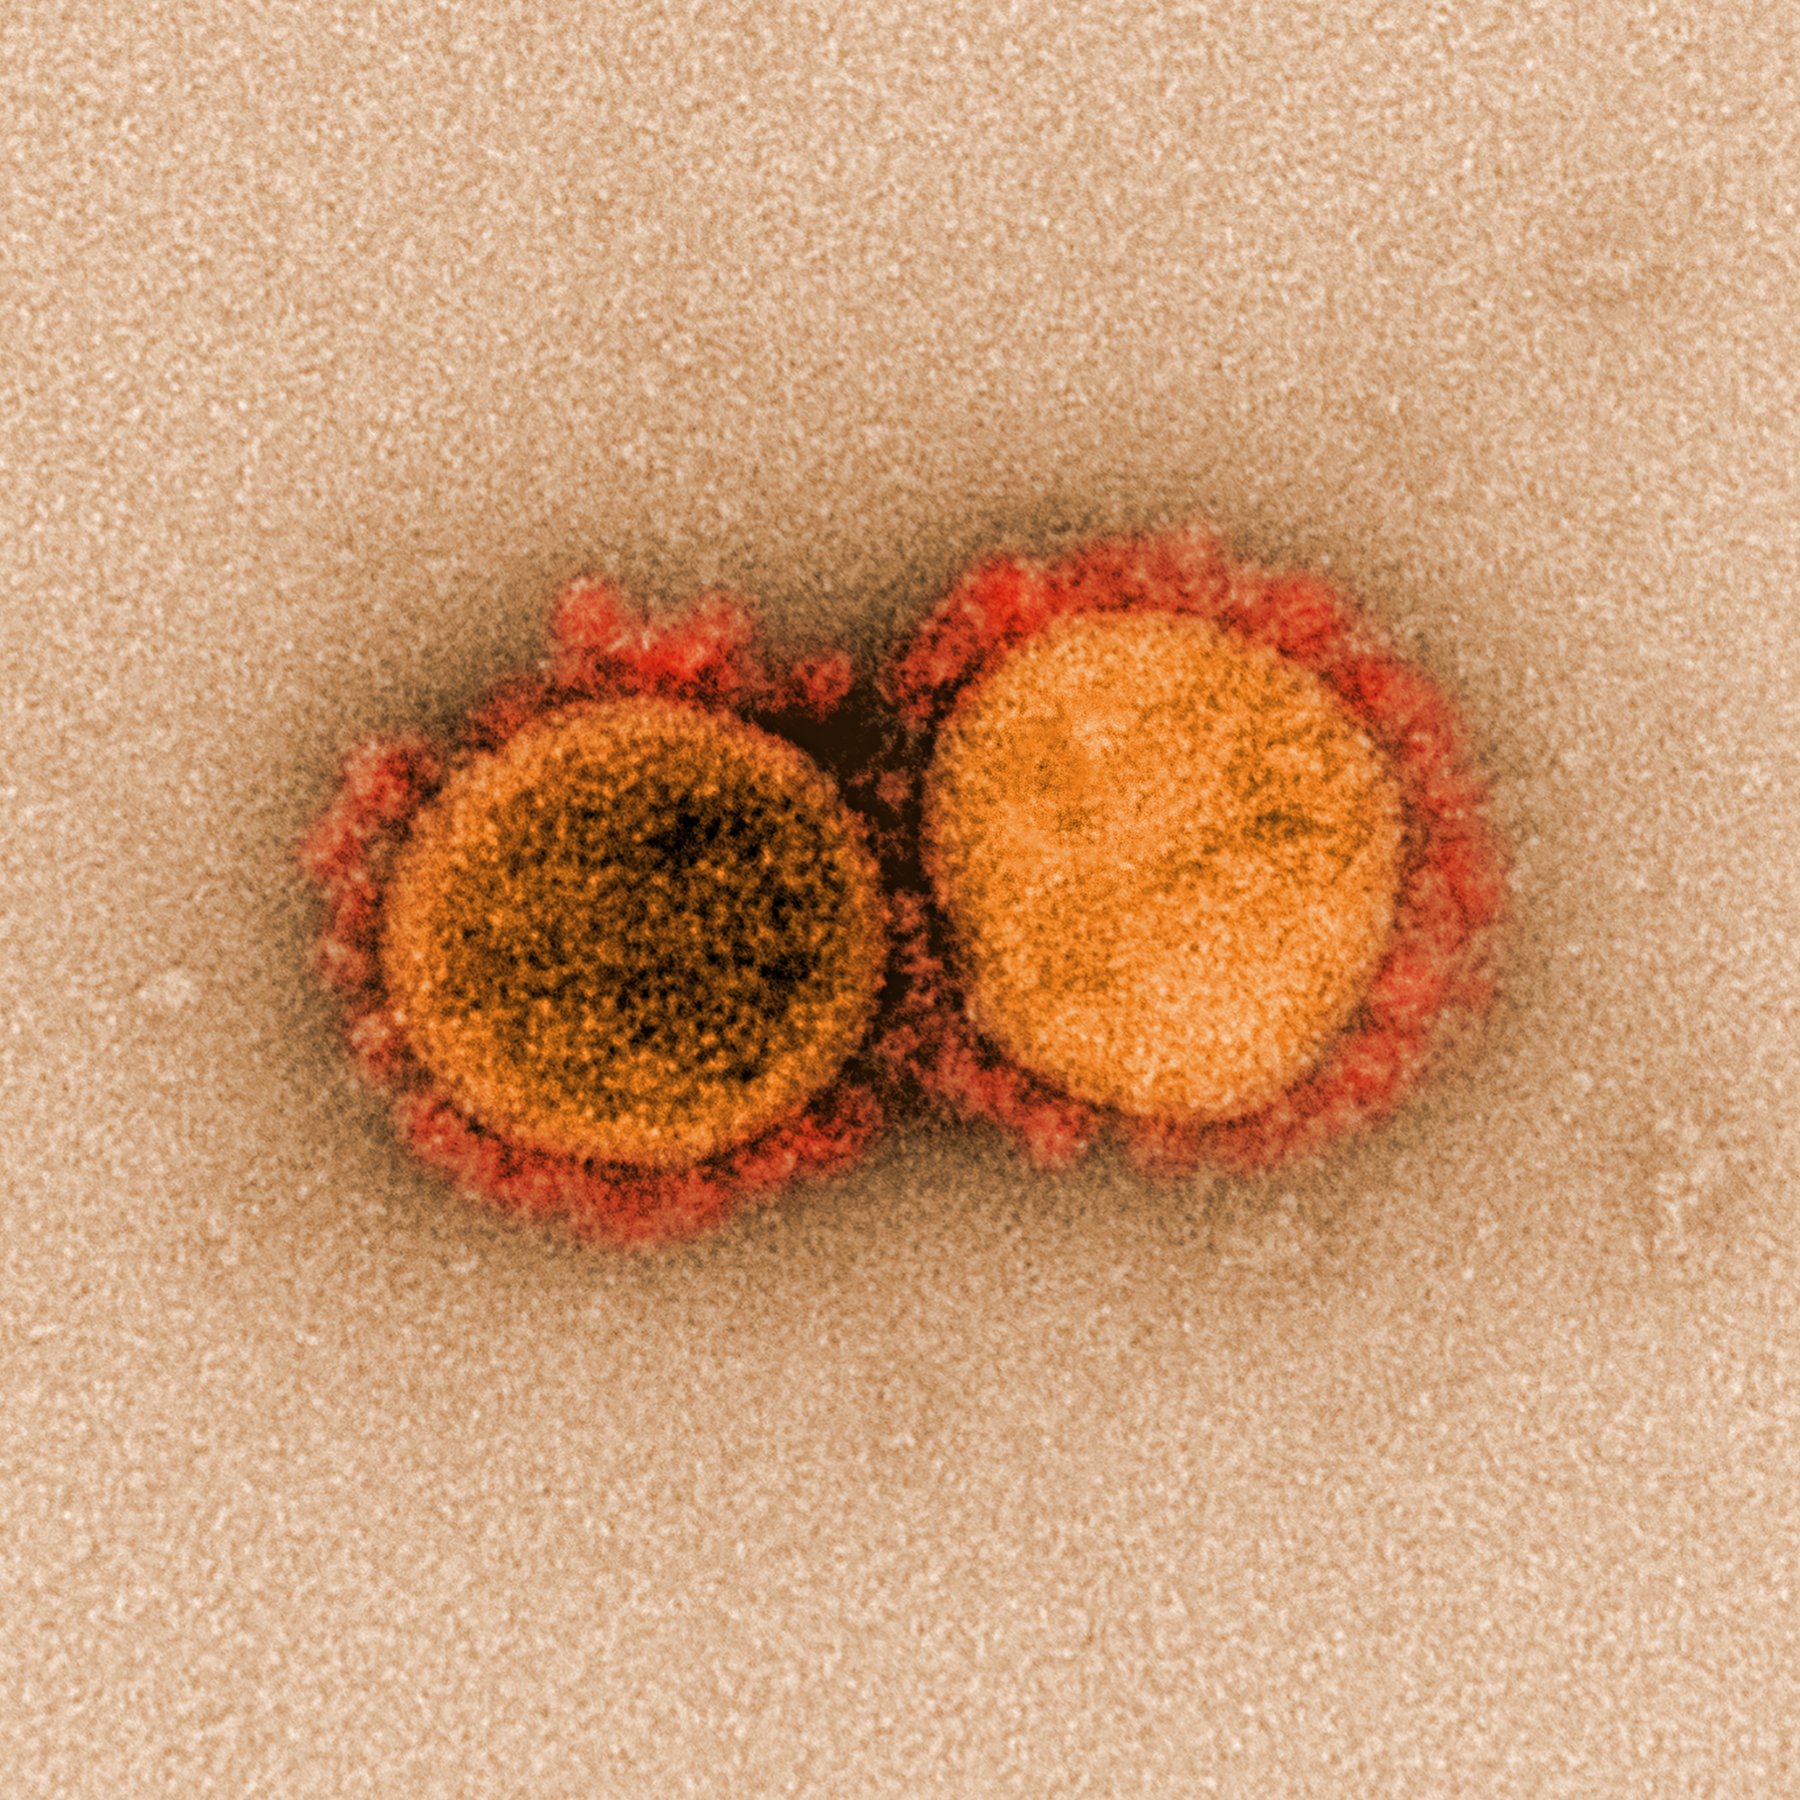 Variant delta plus del coronavirus: tot el que se sap fins ara